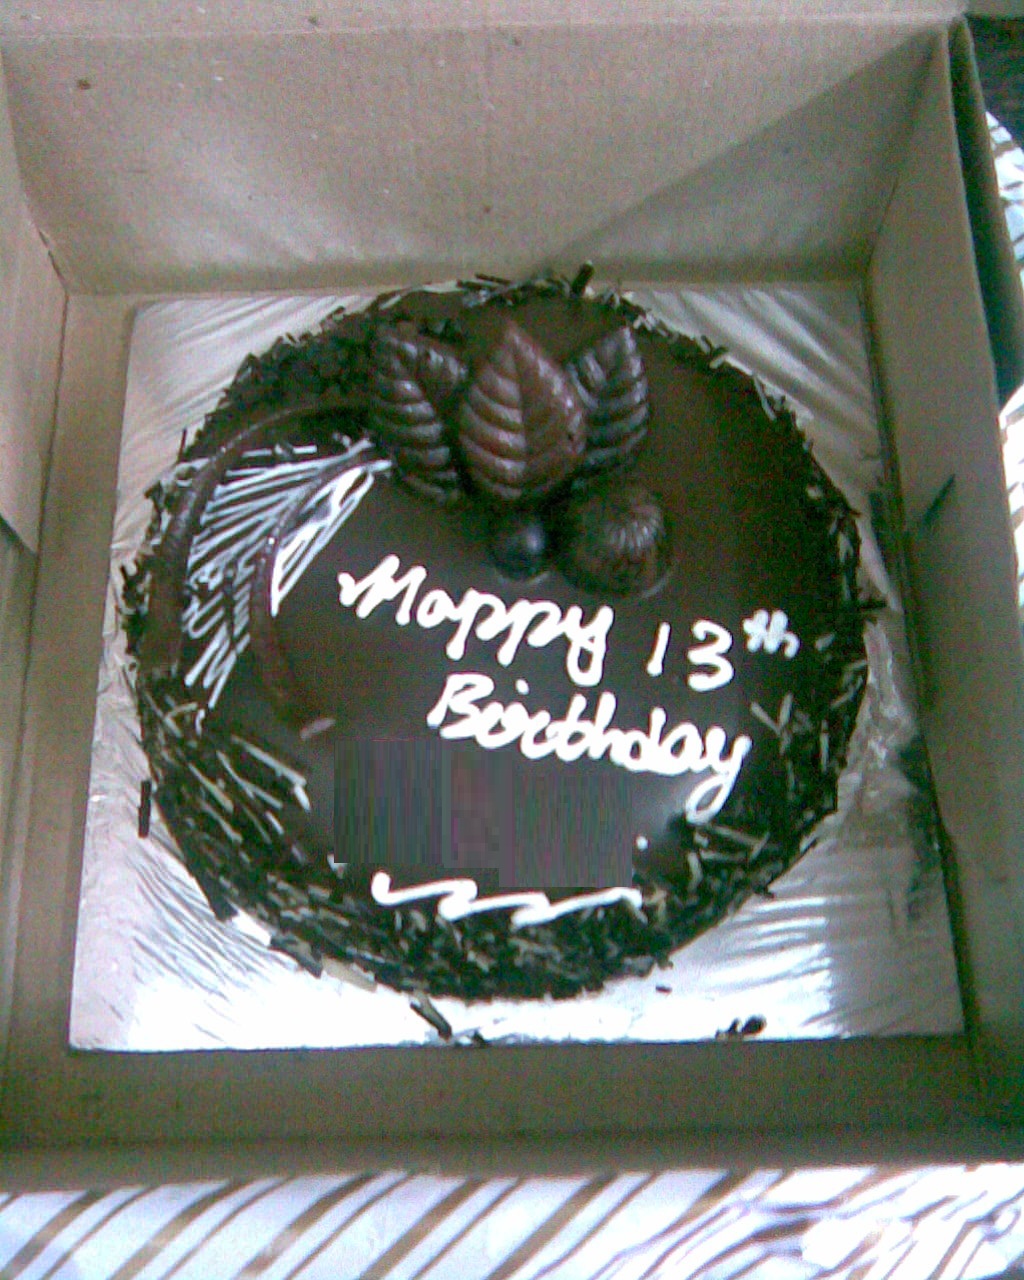 File:Chocolate Birthday cake.jpg - Wikimedia Commons